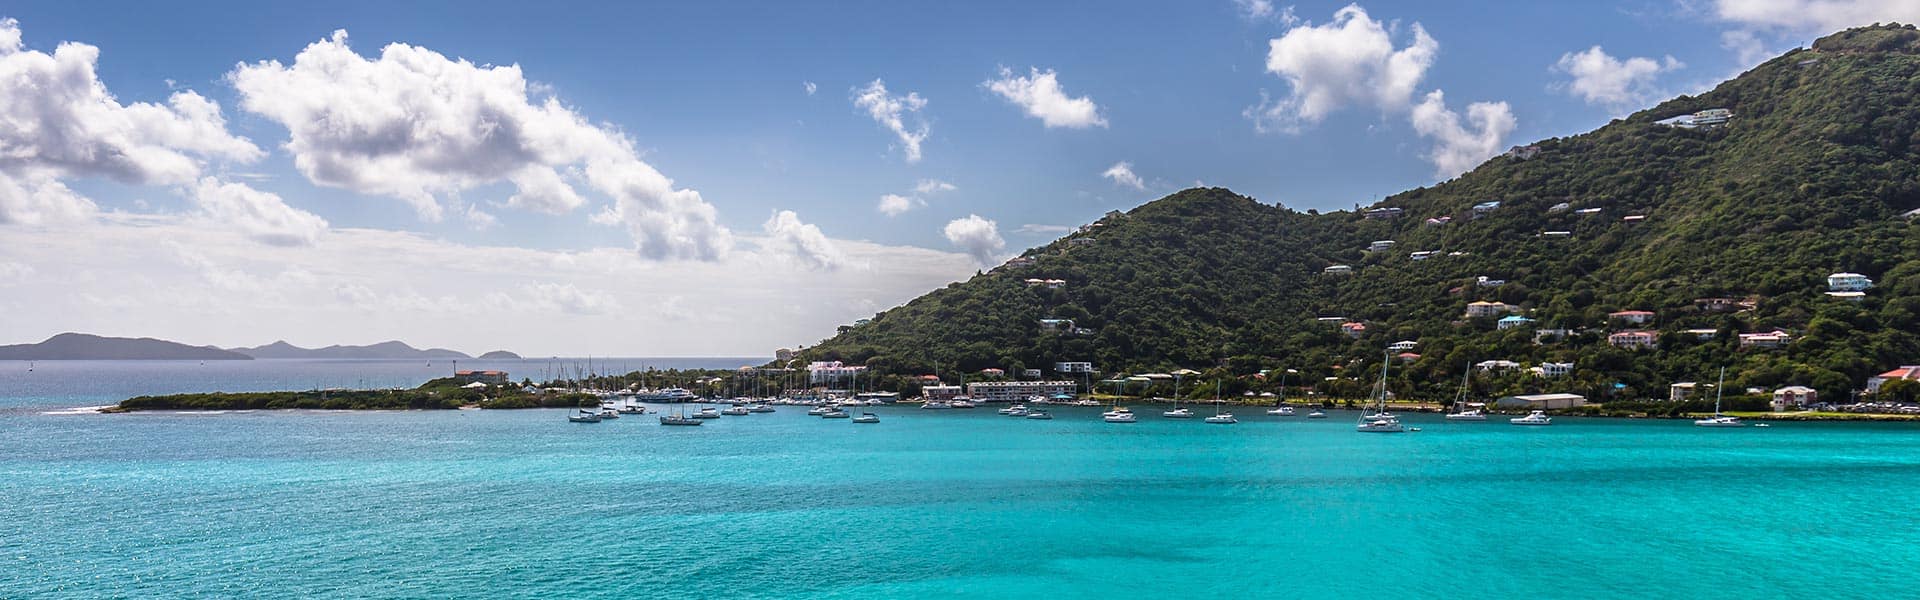 Karibik: Great Stirrup Cay und Dominikanische Republik